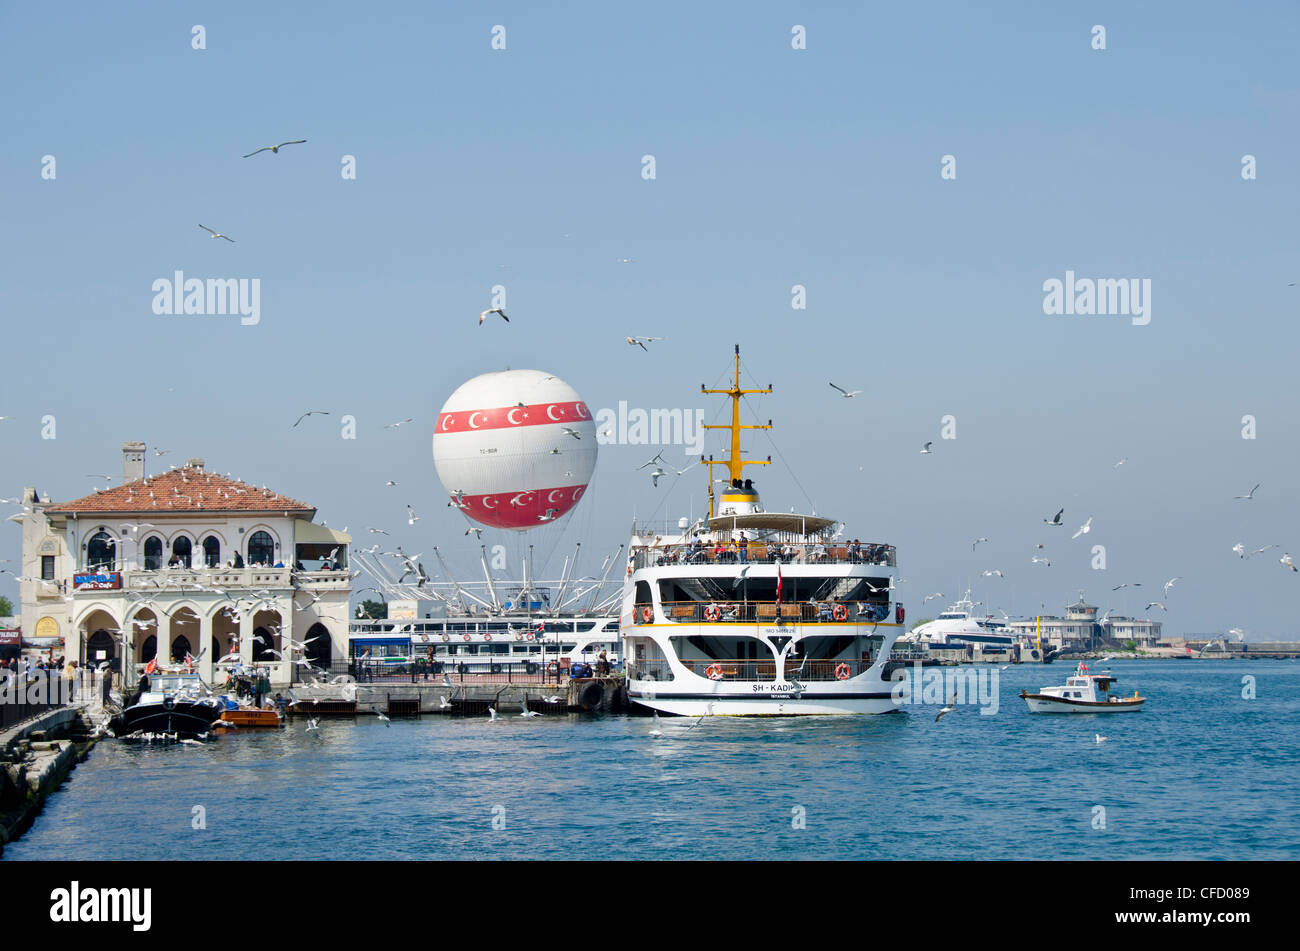 Ferry and sightseeing balloon, Kadiköy, Asian side of Bosphorus, Istanbul, Turkey Stock Photo